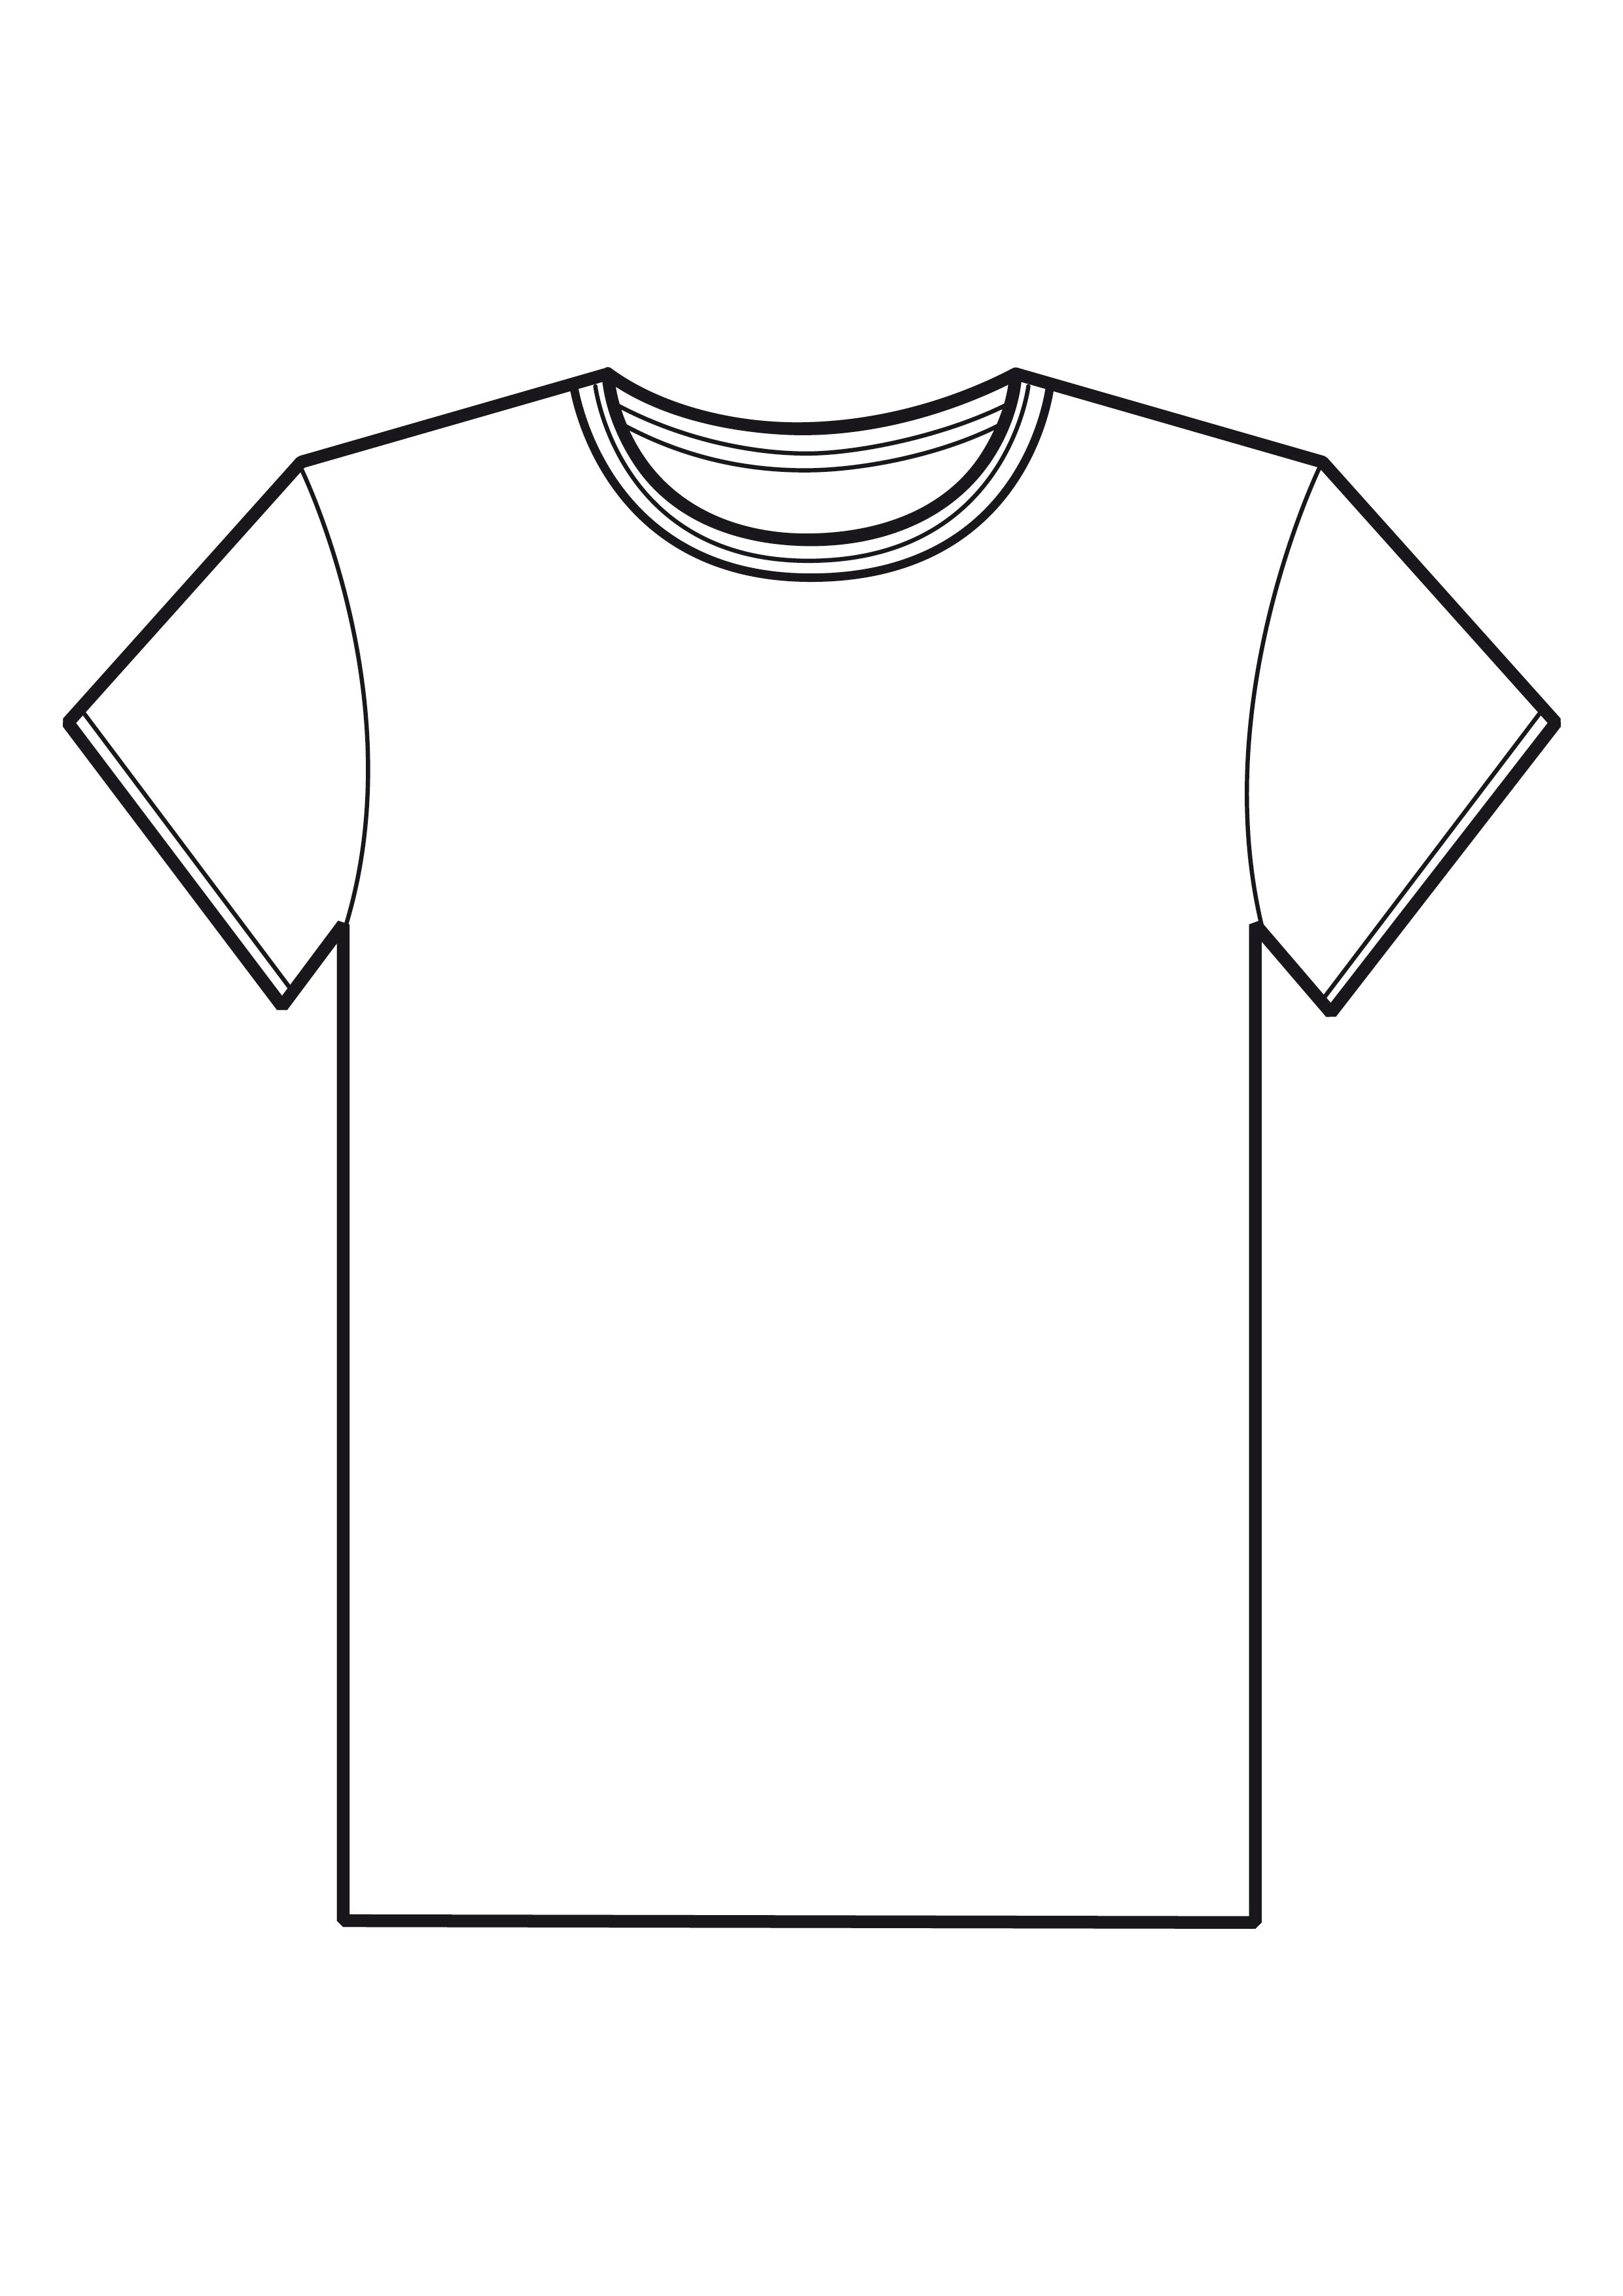 blank-t-shirt-design-template